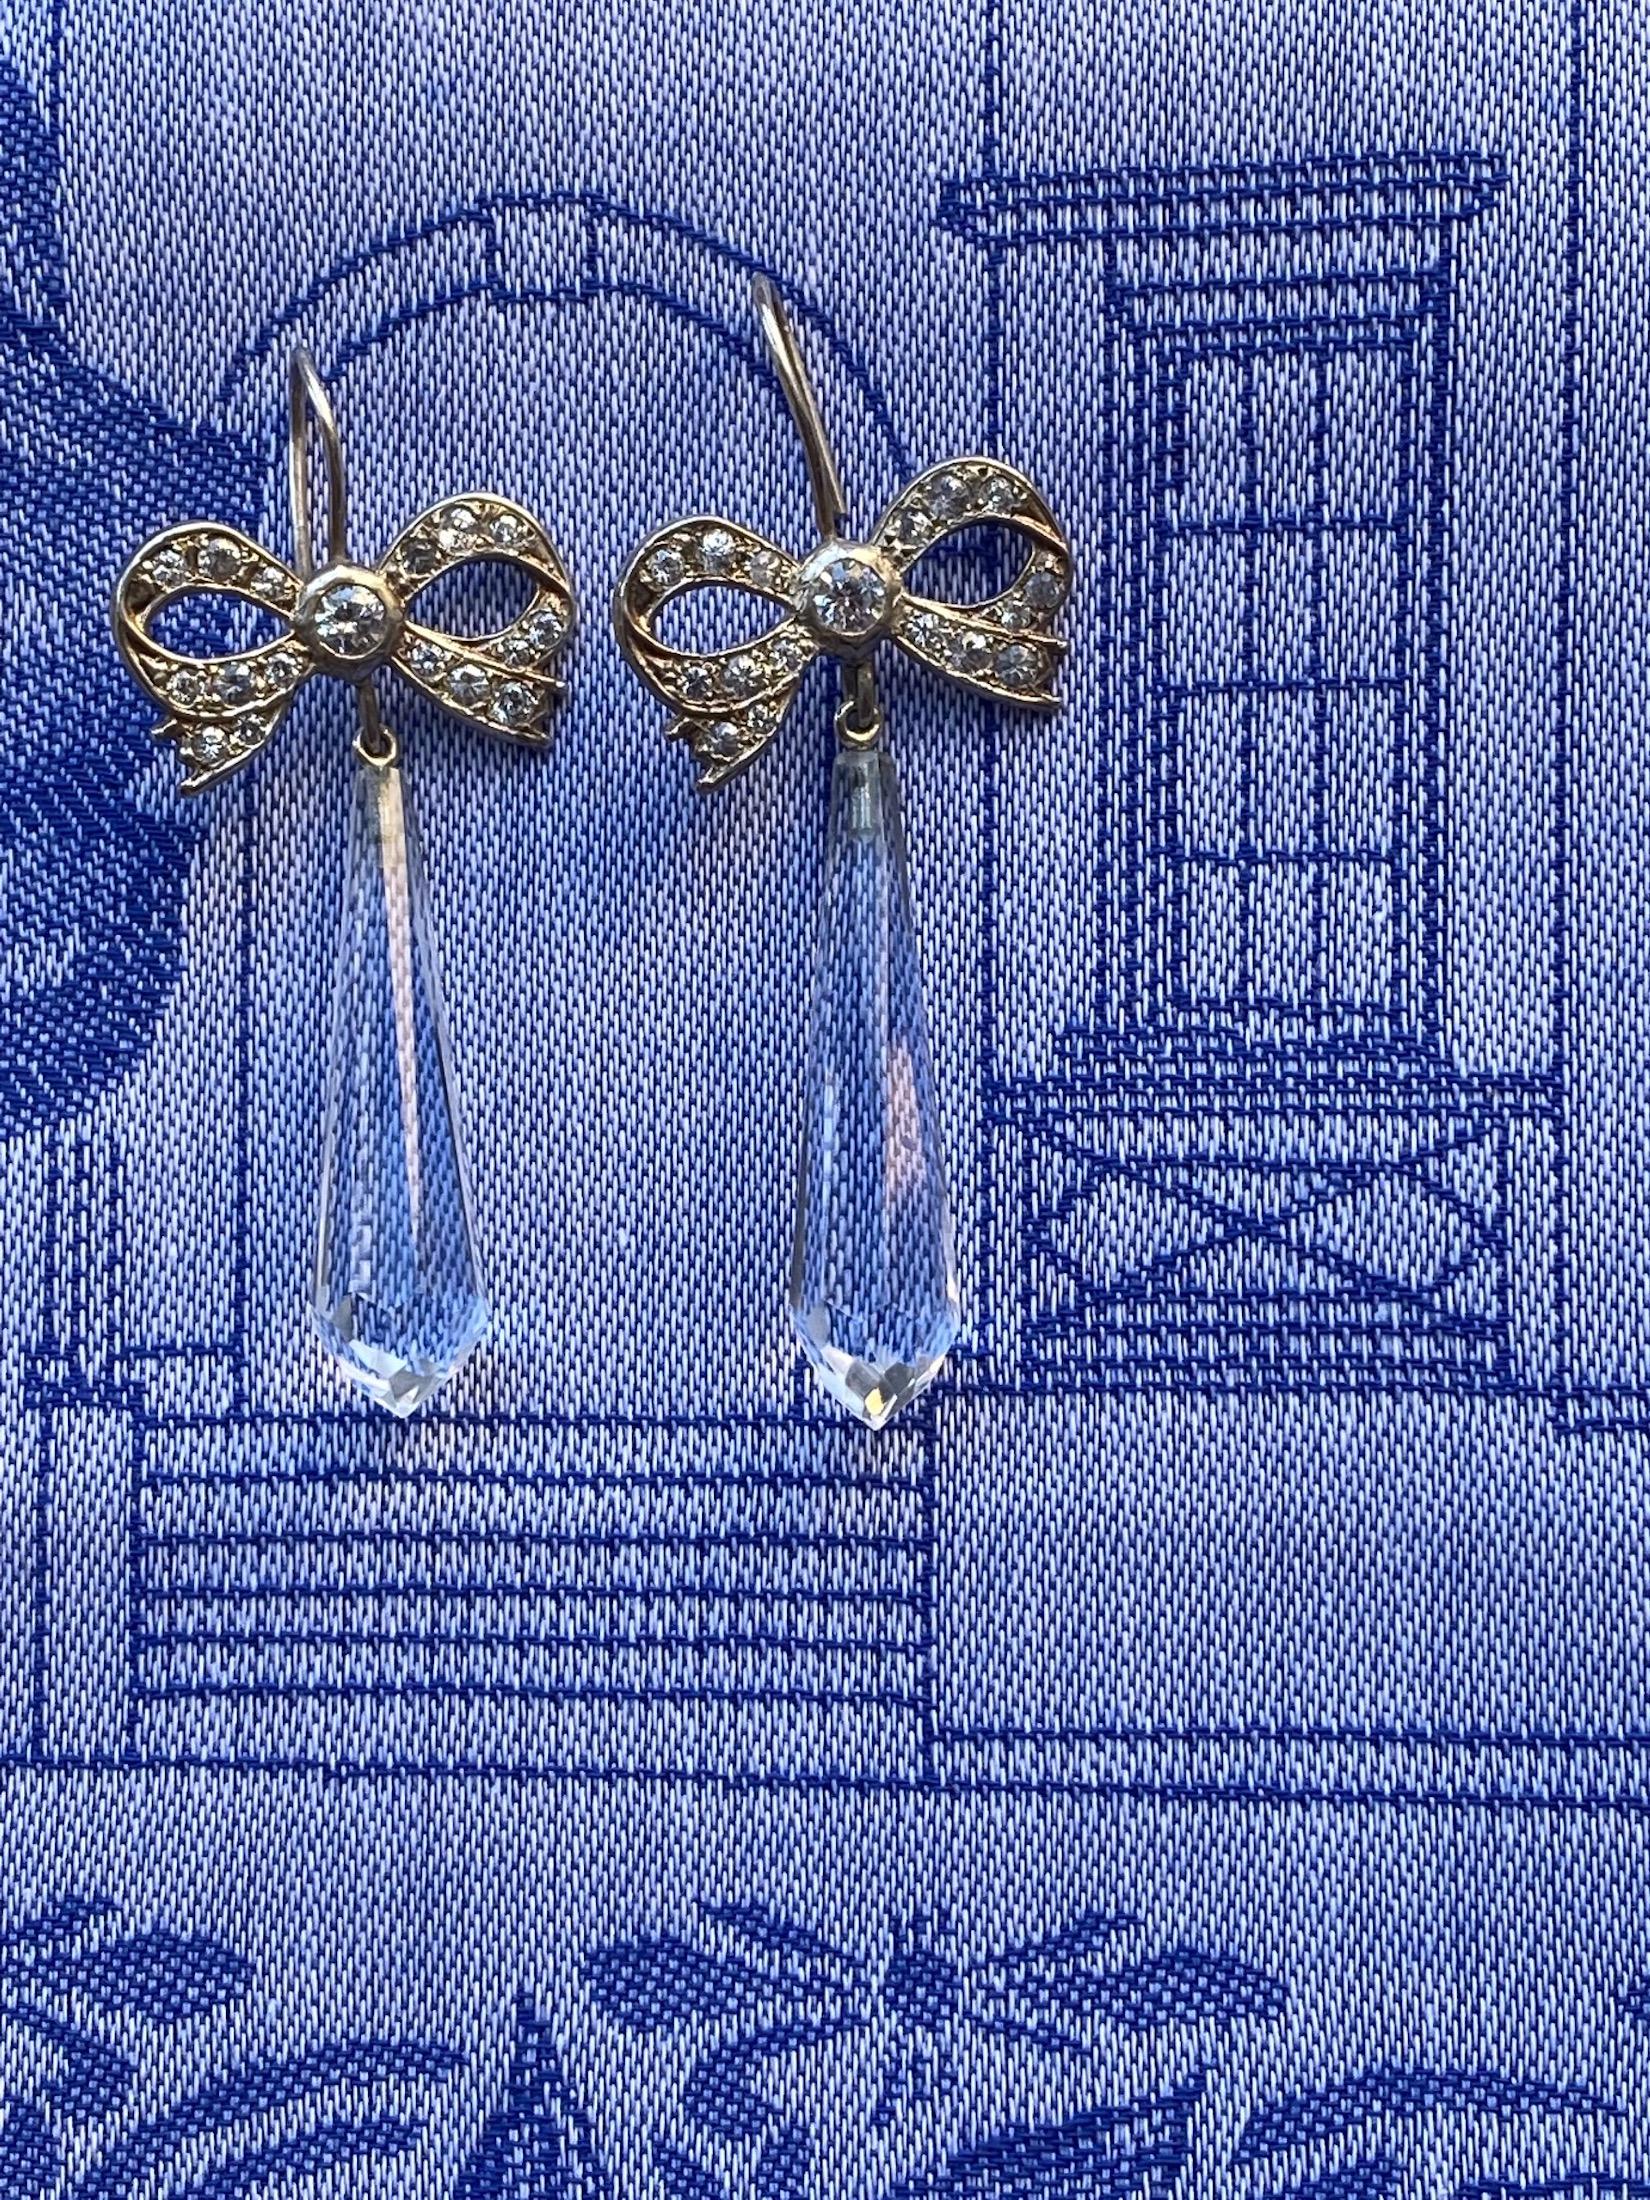 swarovski drop earrings sale